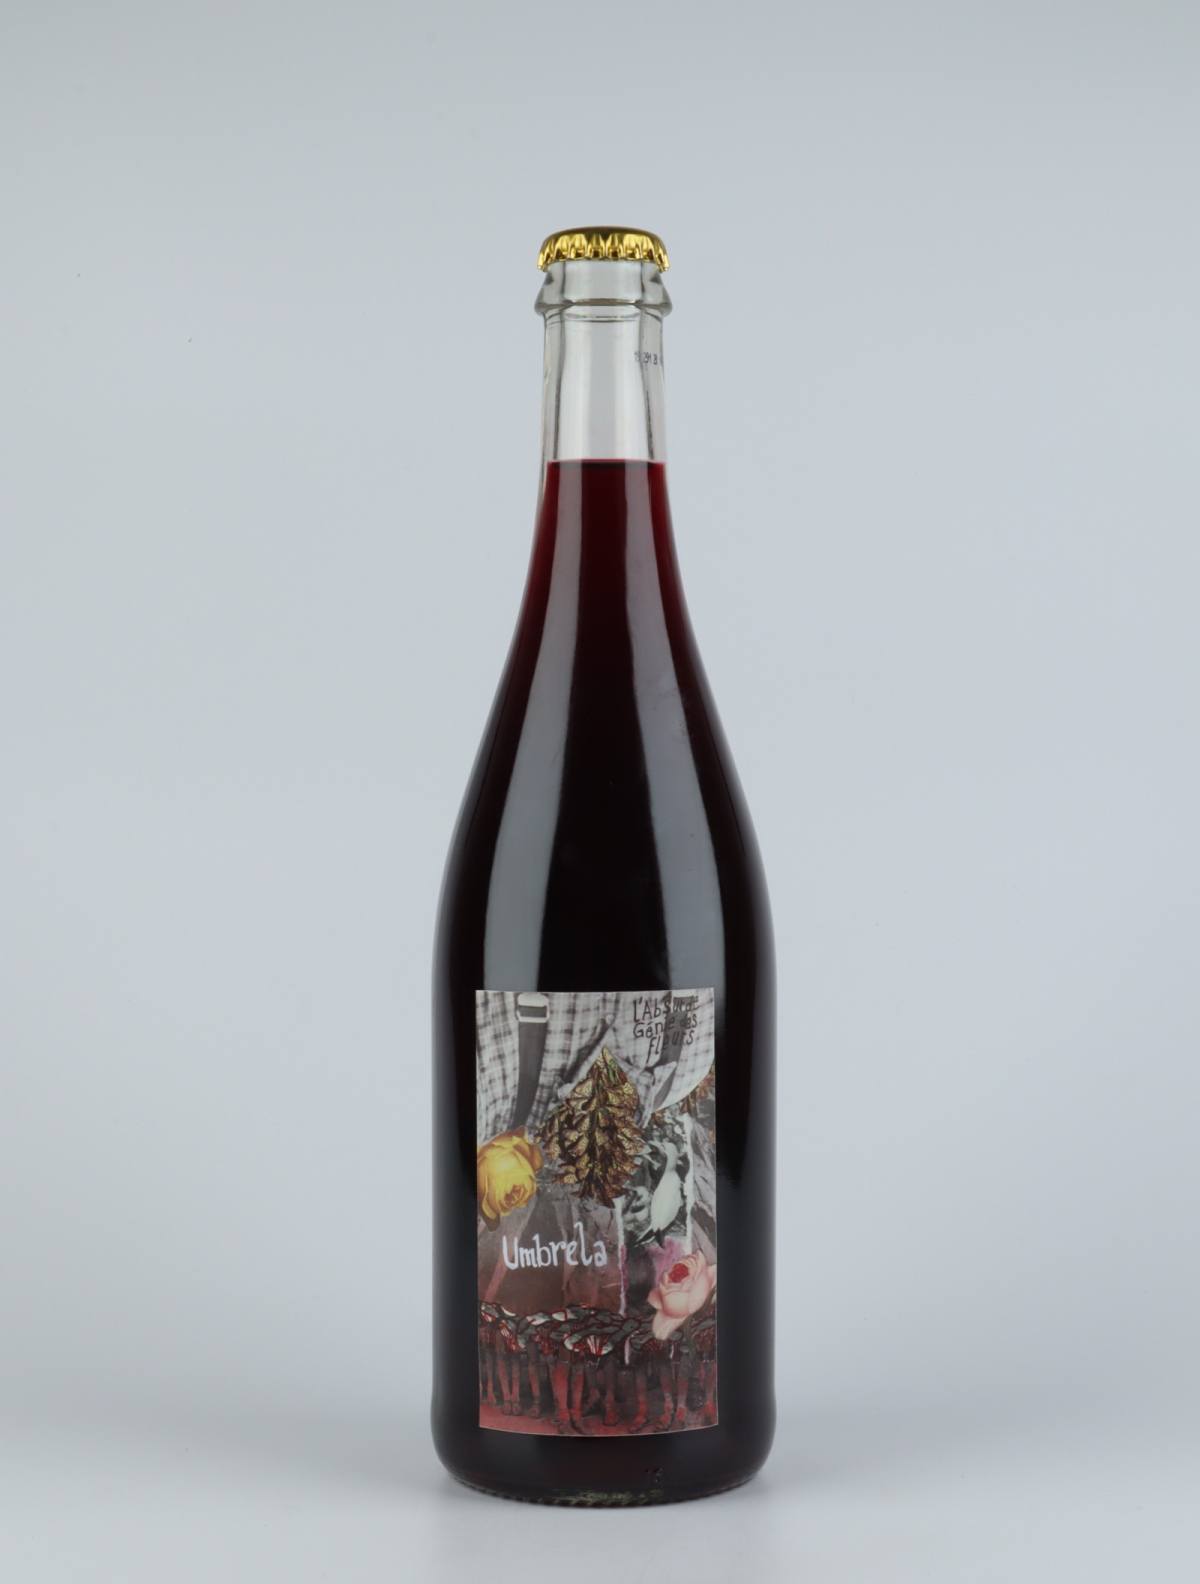 En flaske 2019 Umbrela Rødvin fra Absurde Génie des Fleurs, Languedoc i Frankrig